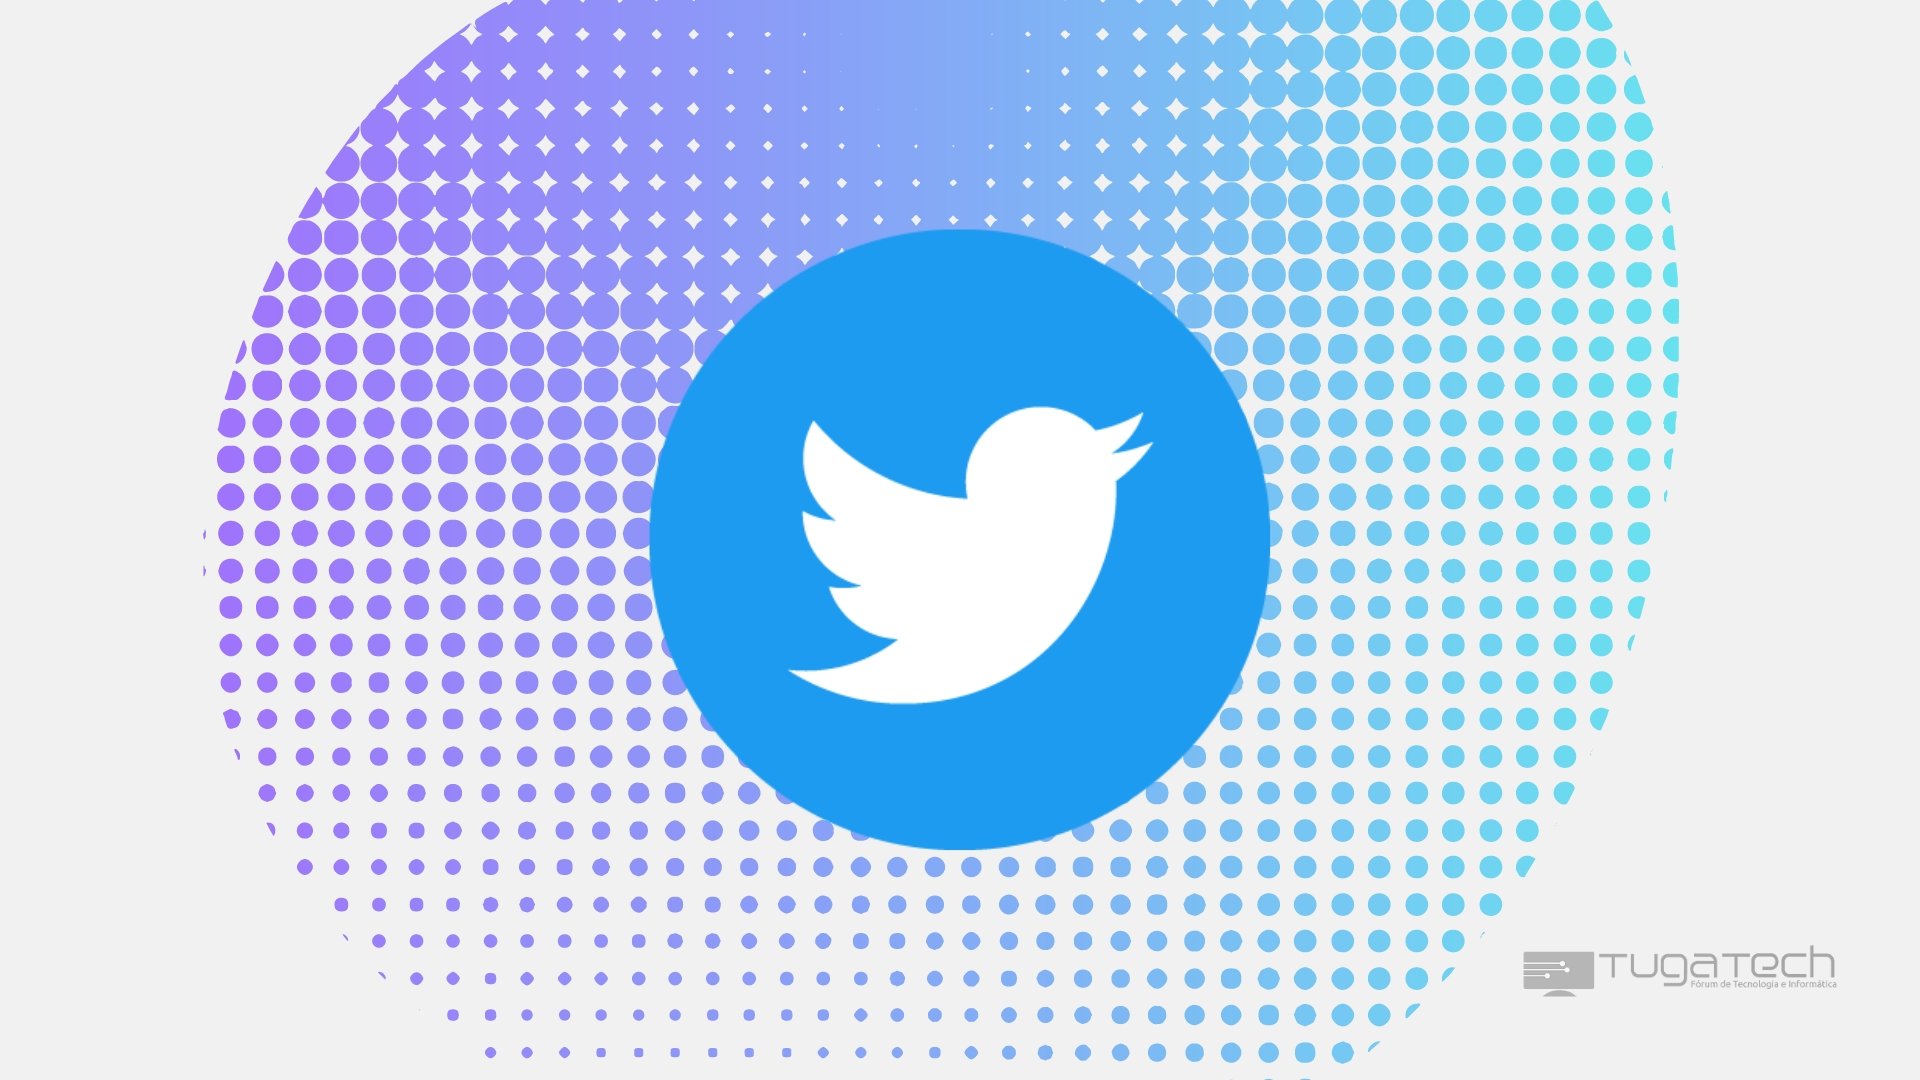 Logo do Twitter sobre fundo colorido